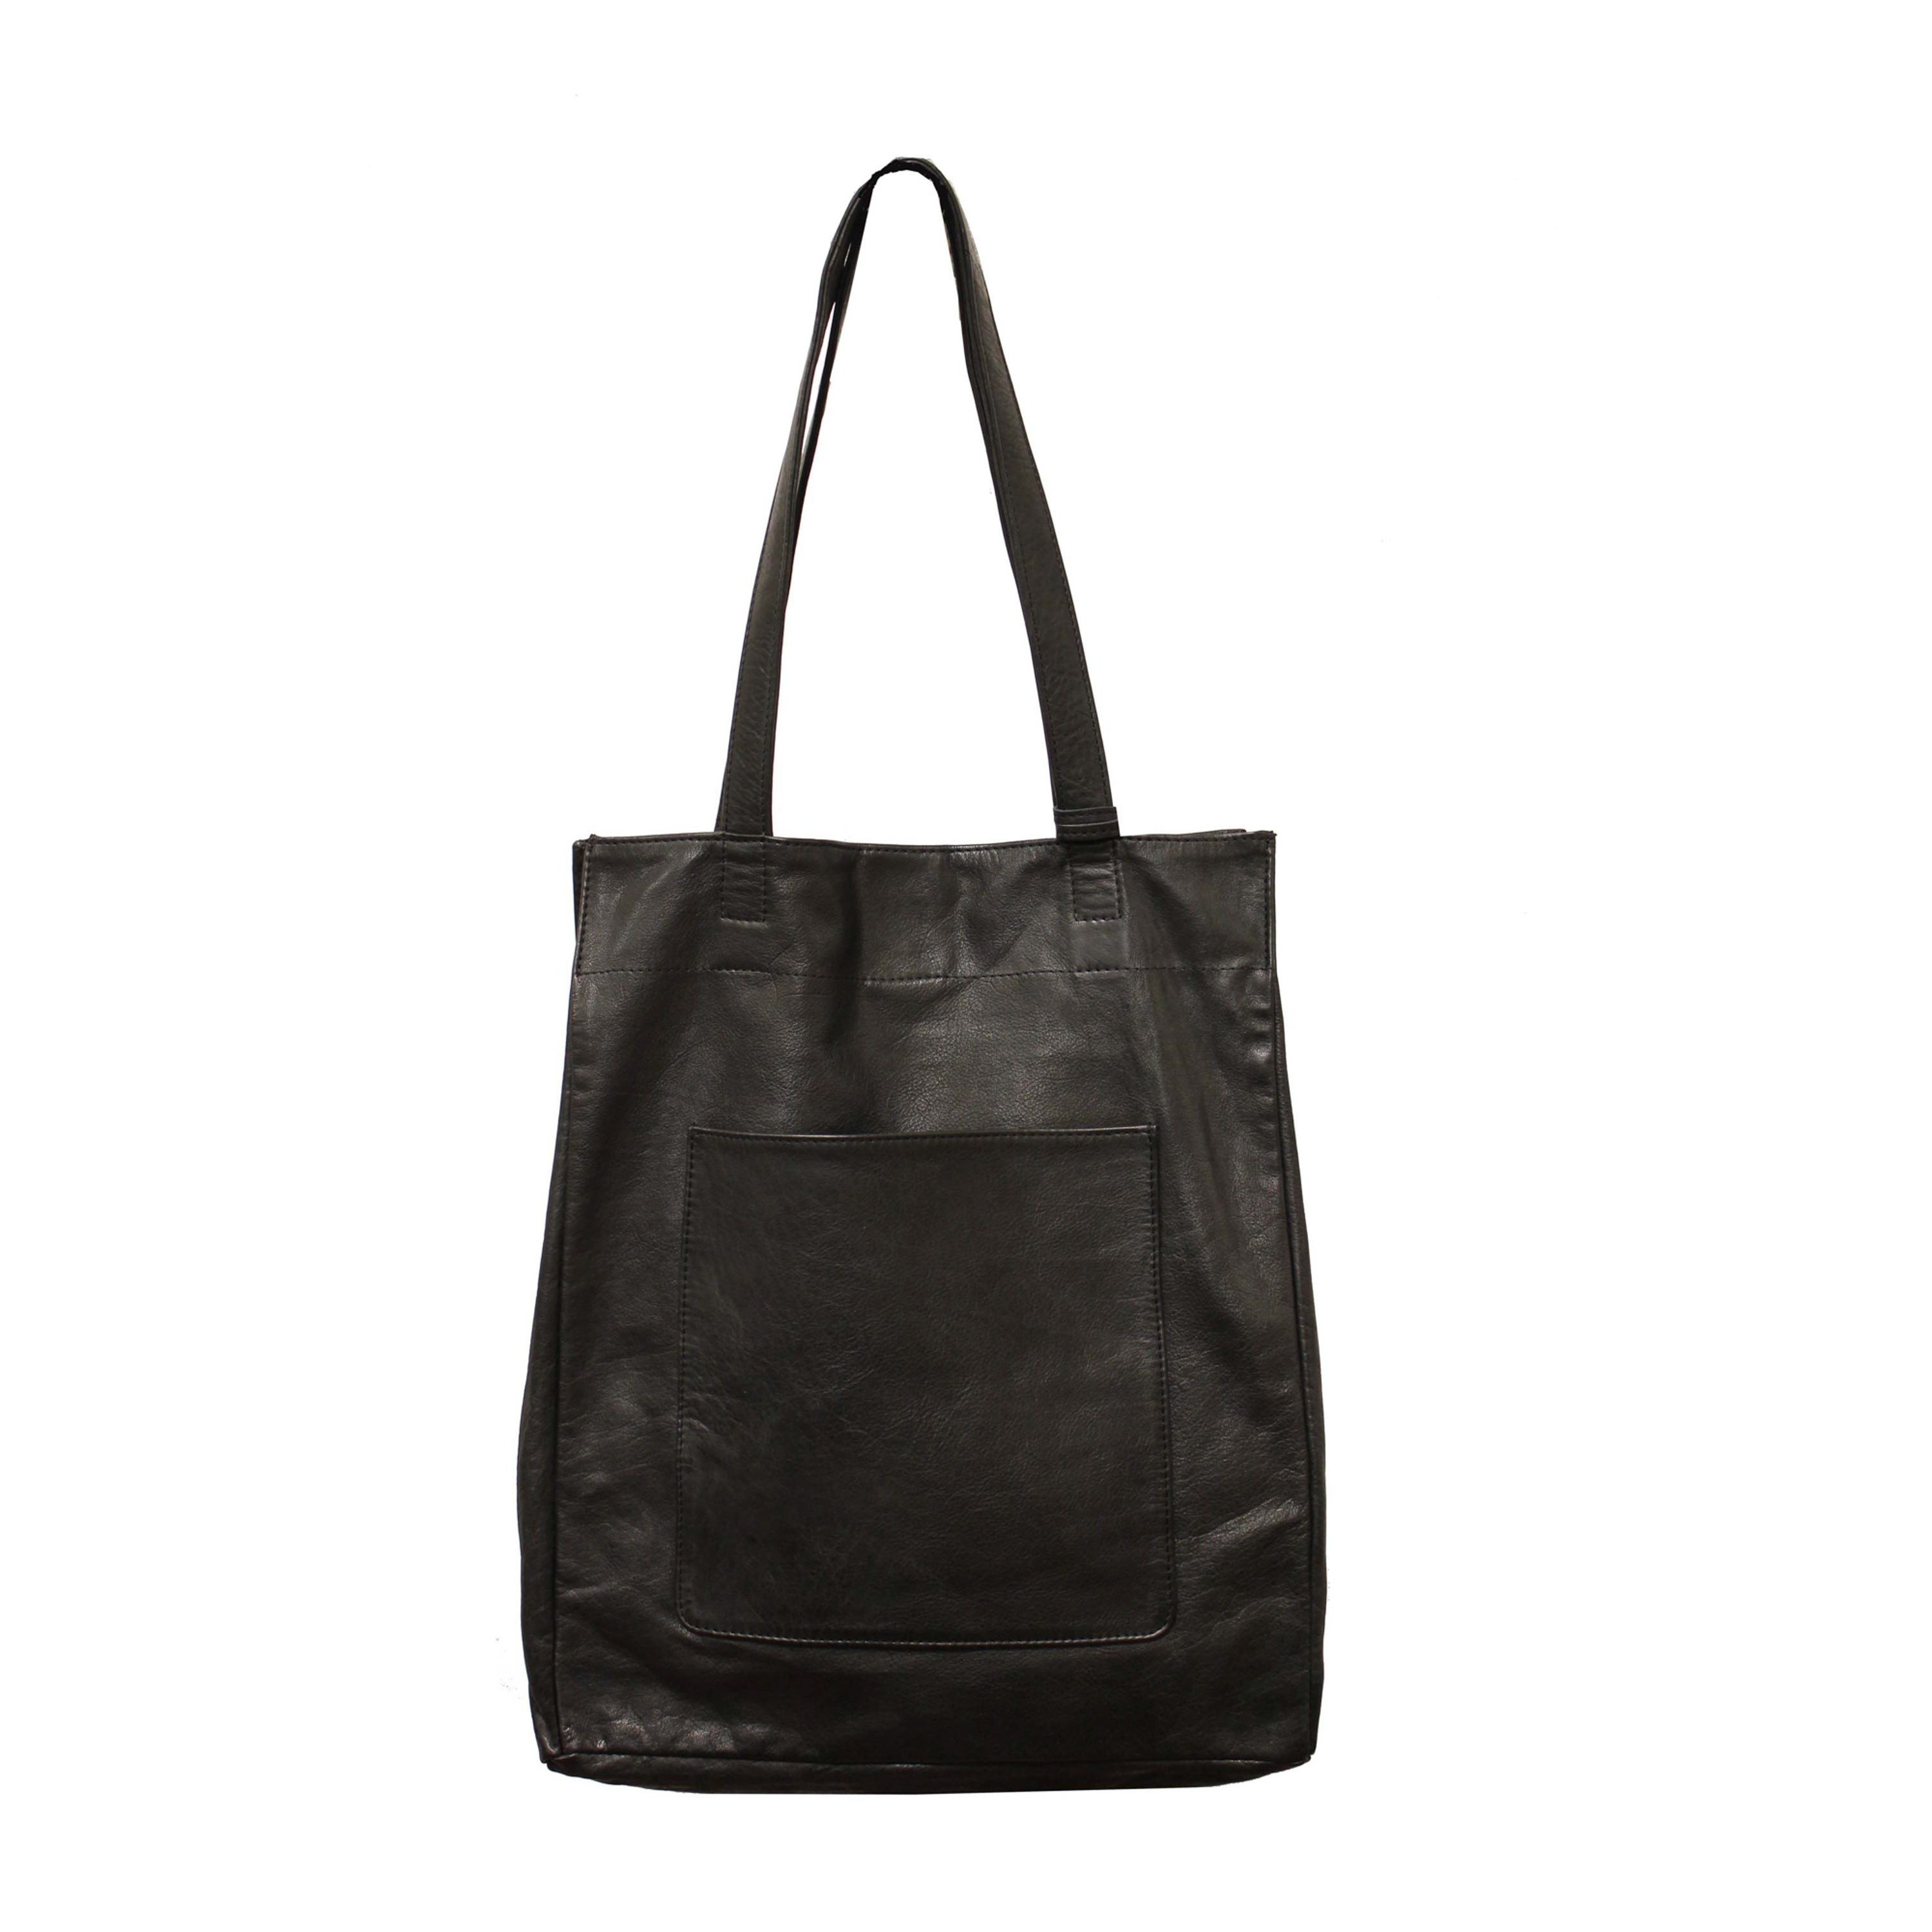 Margie Leather Tote/Shoulder Bag Black